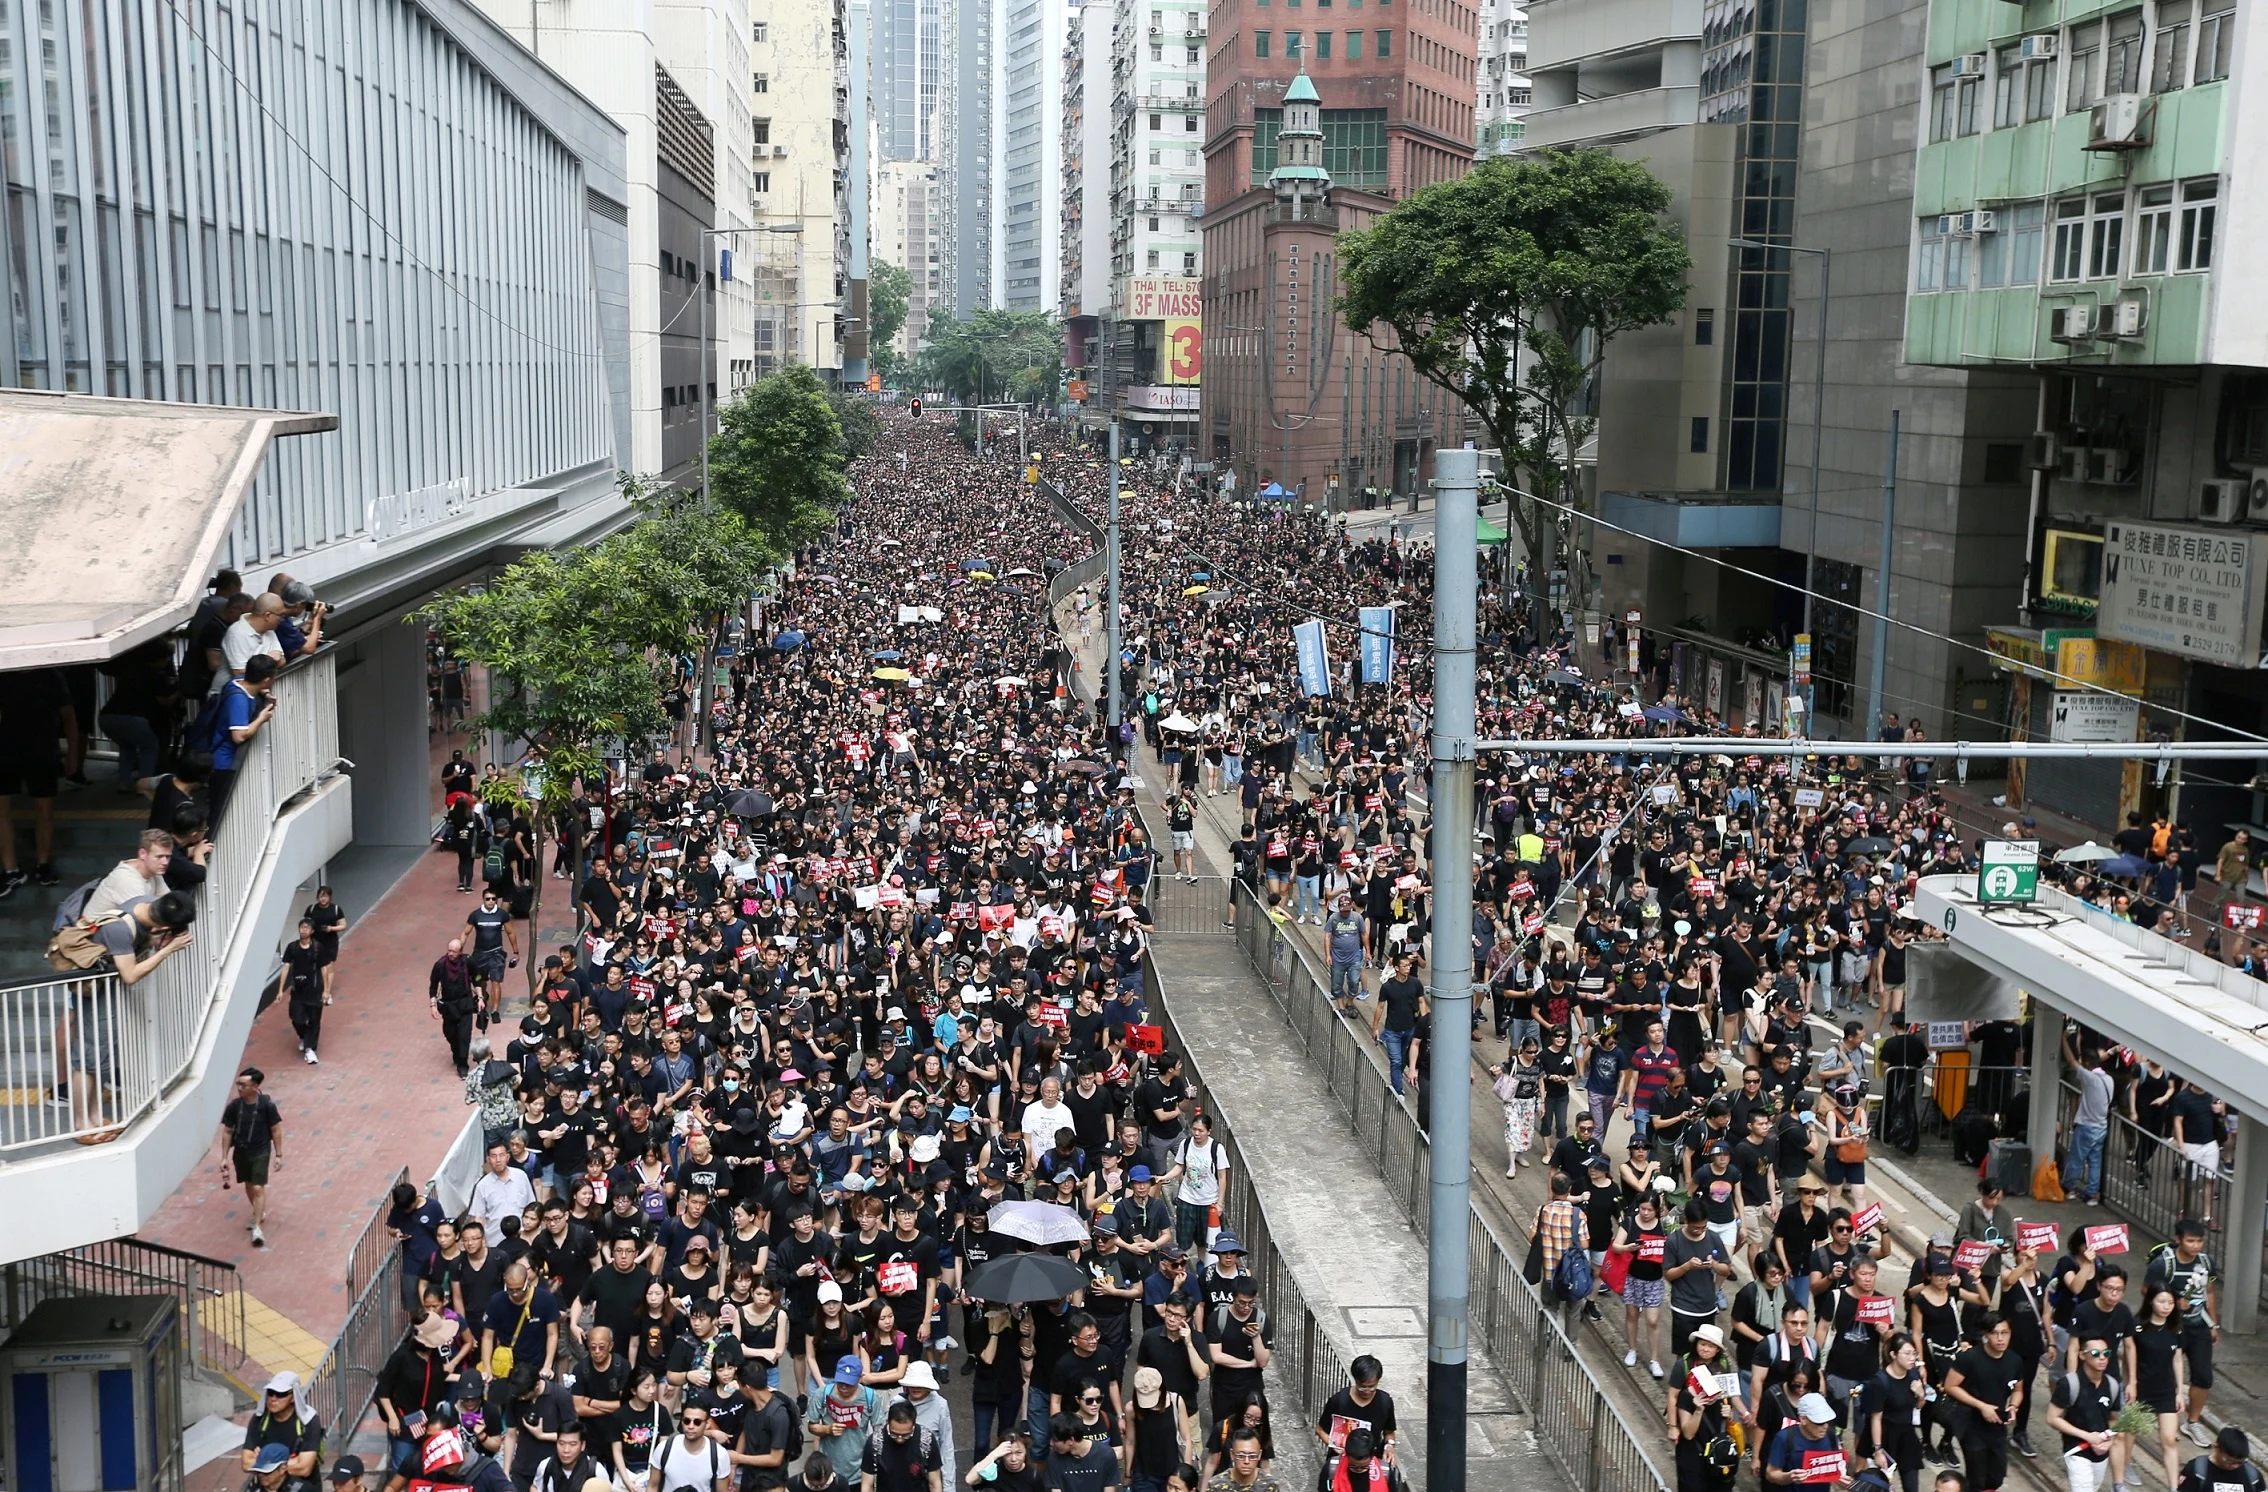 ההפגנות בהונג קונג בעקבות הצעת חוק ההסגרה לסין